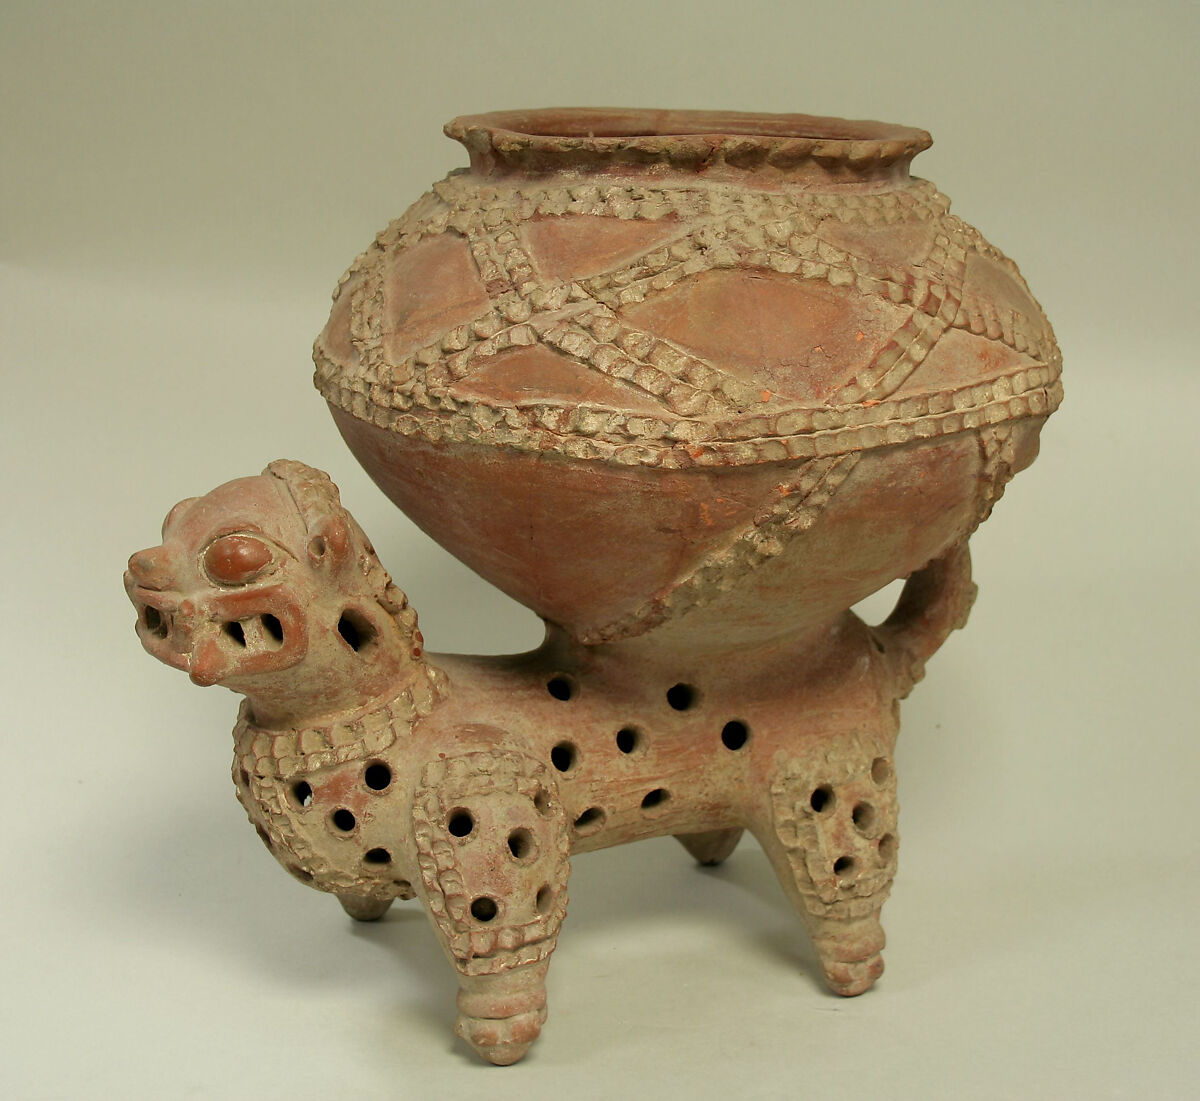 Bowl Resting on Jaguar, Ceramic, pigment, Costa Rica 